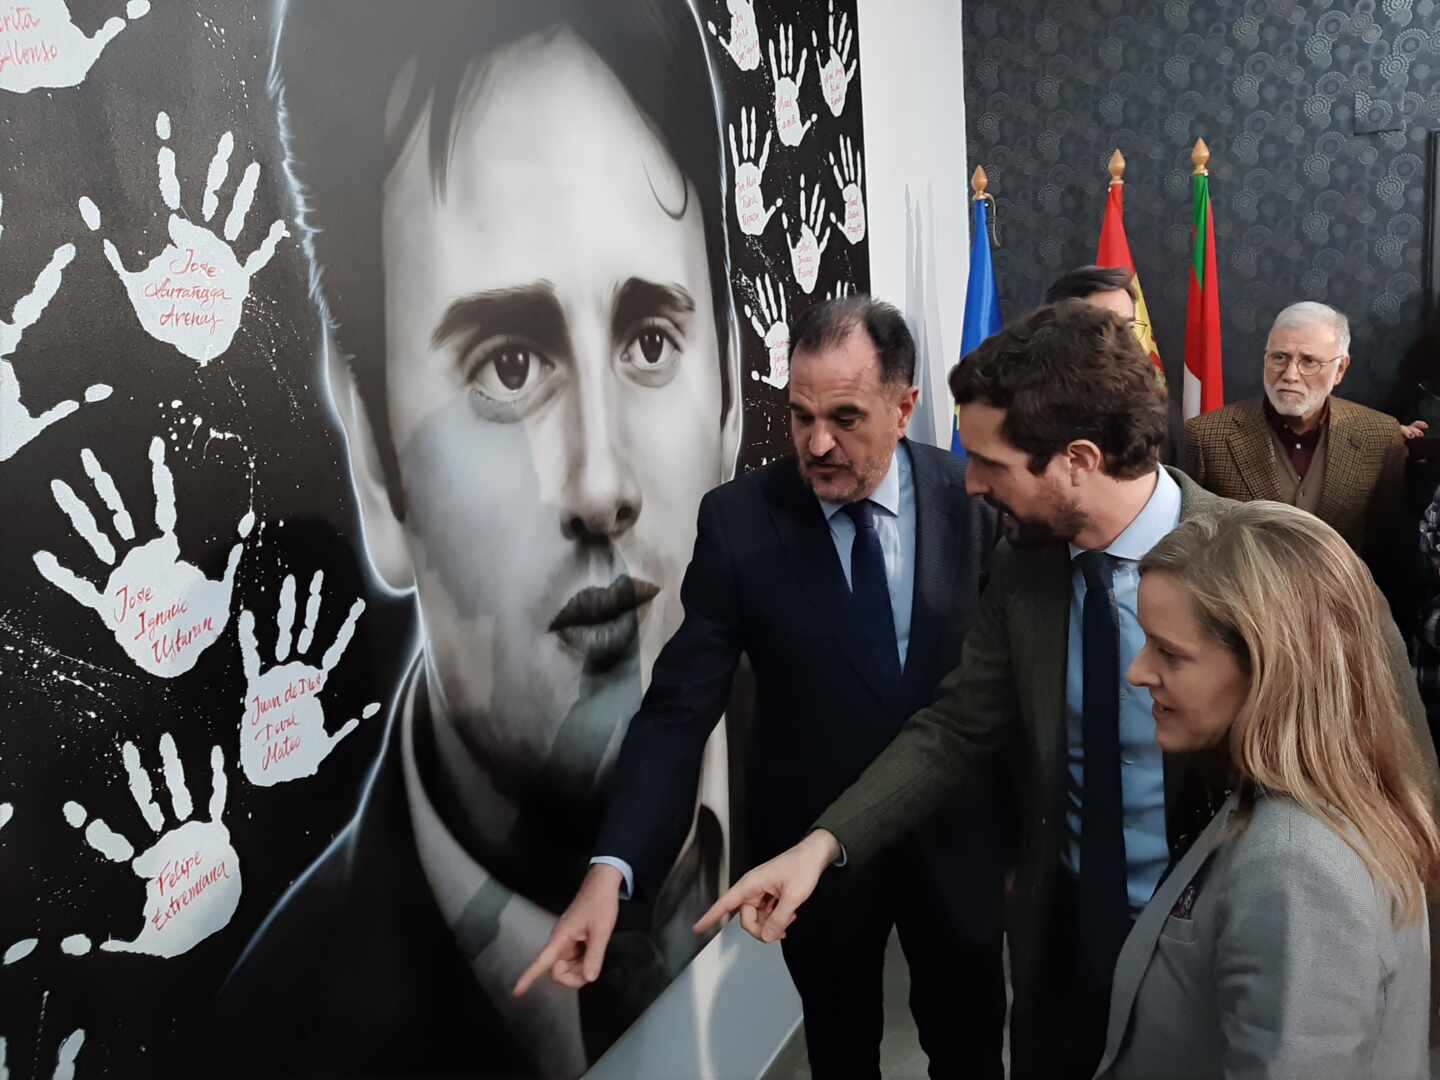 Iturgaiz, Casado y Fernández observan el panel en recuerdo de Miguel Angel Blanco en la sede del PP en Ermua.